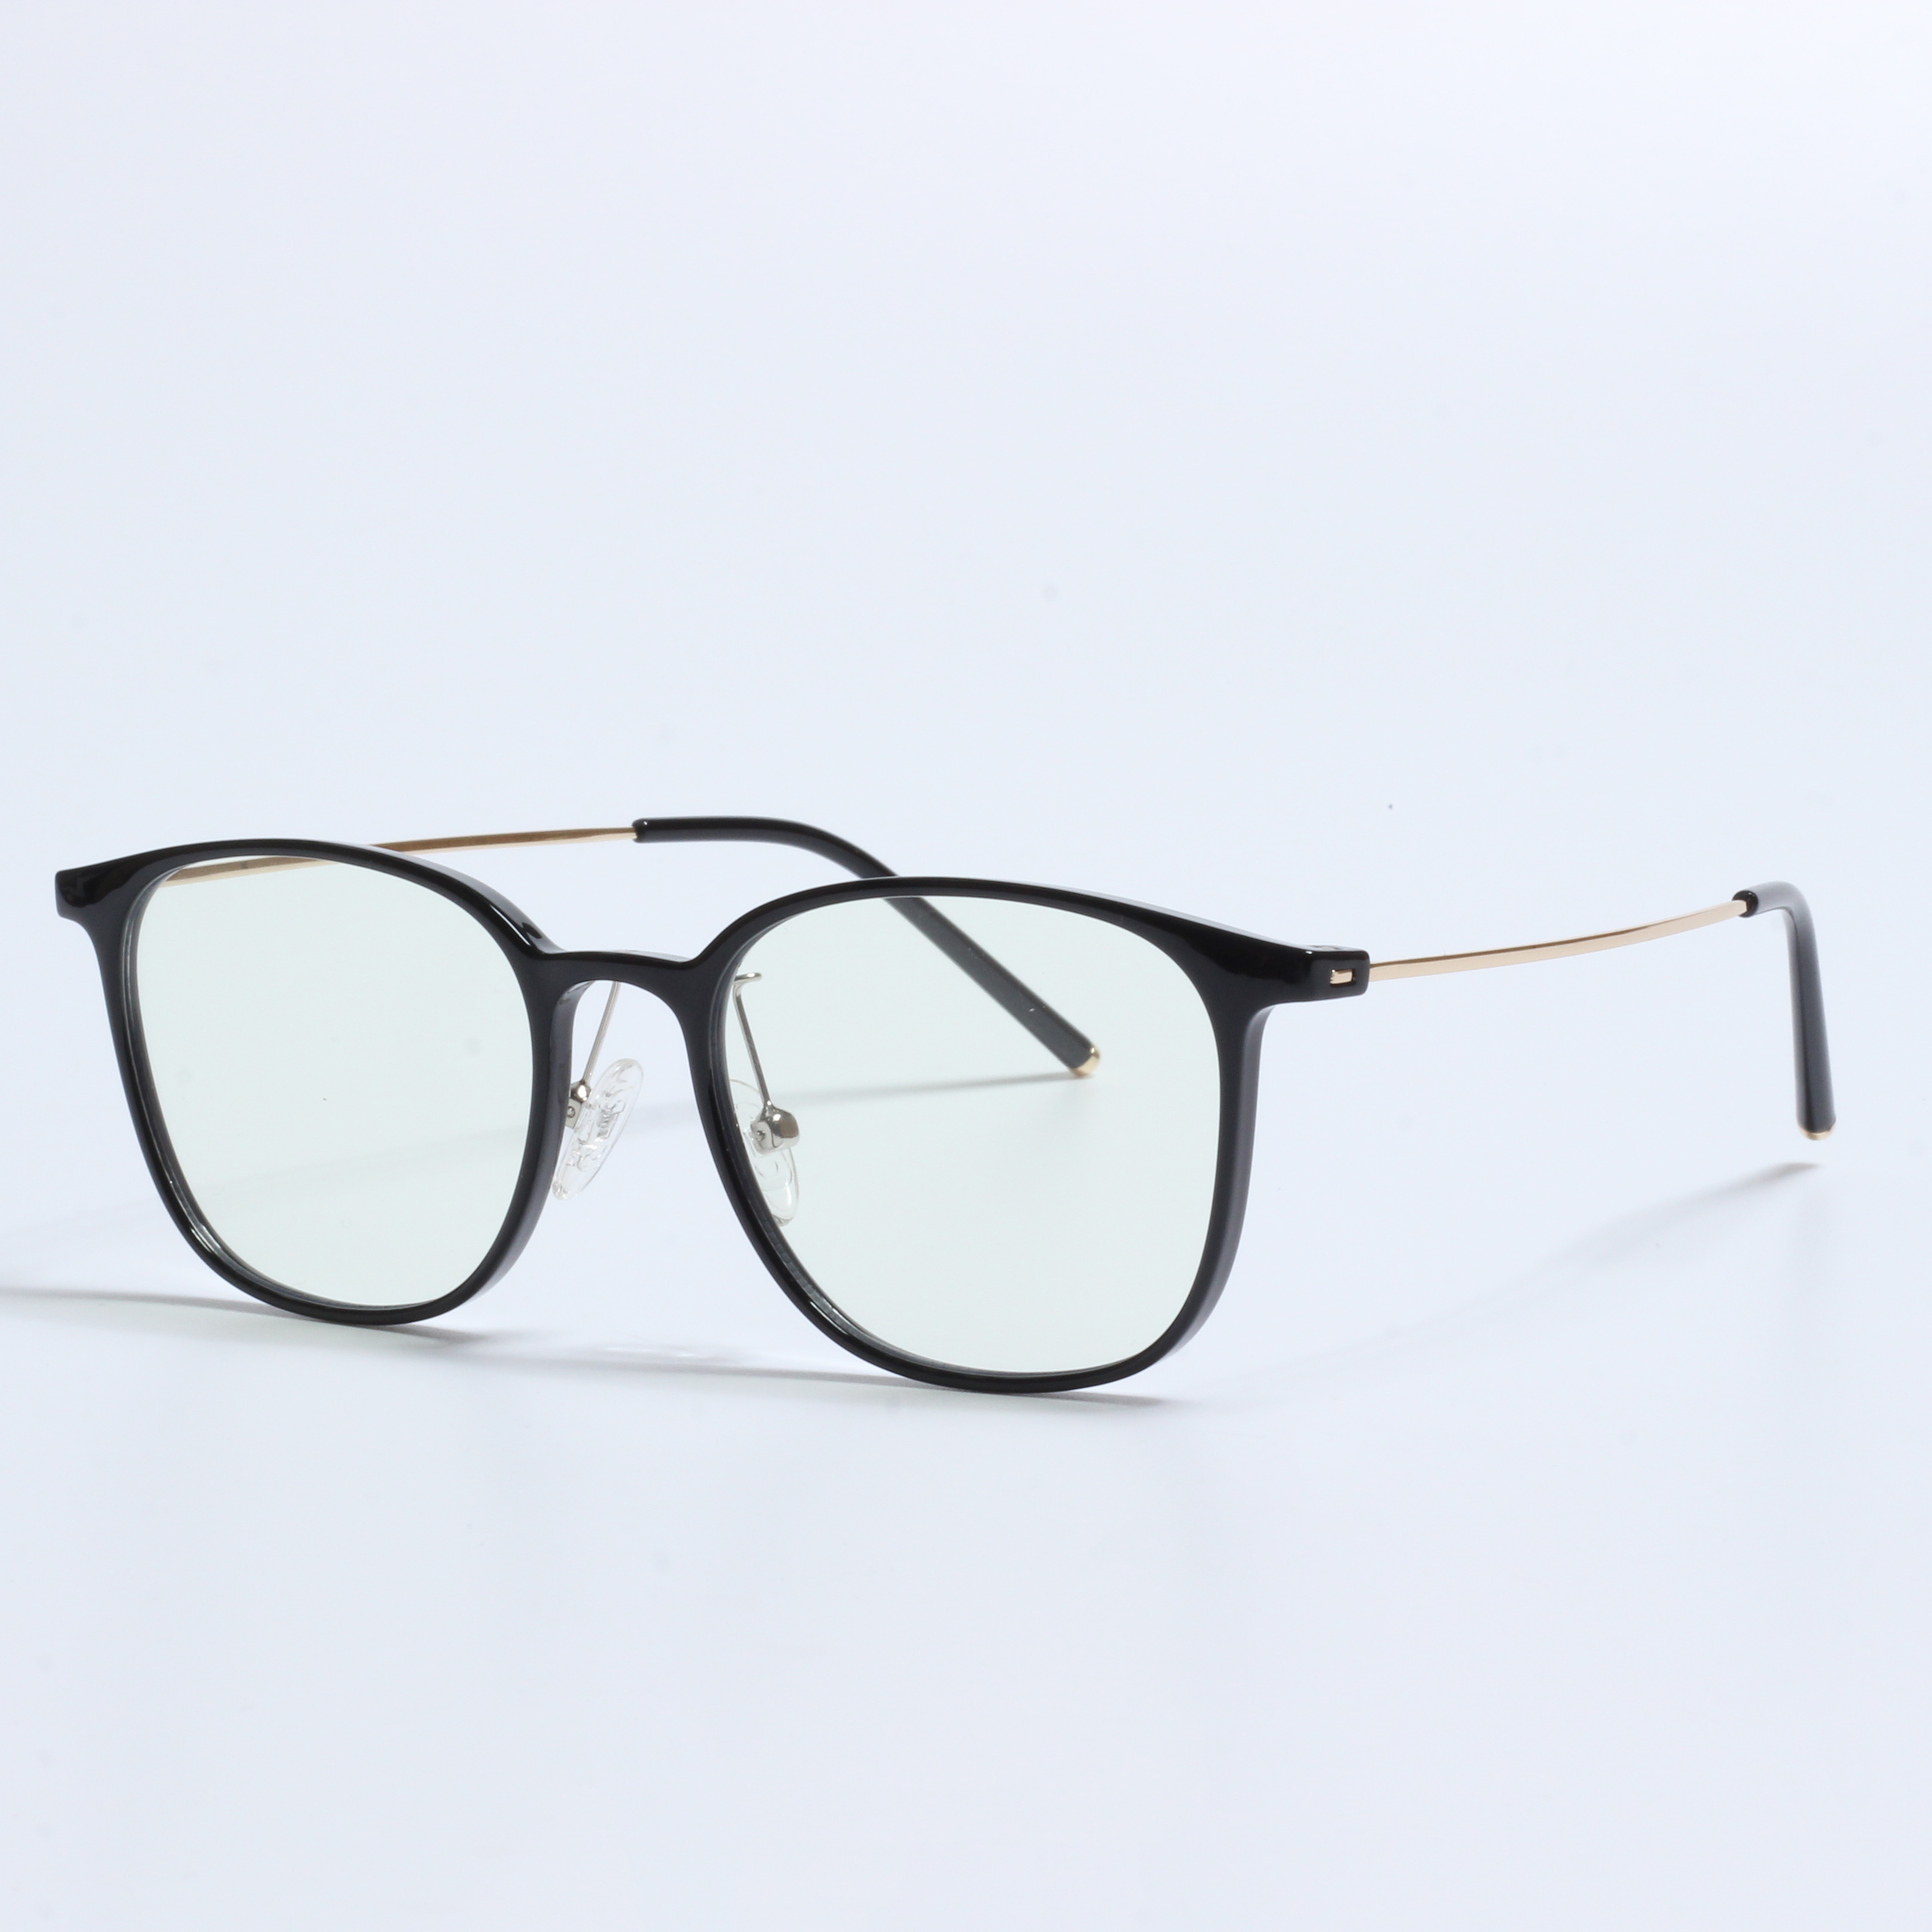 नयाँ लहर कालो अप्टिकल चश्मा TR फ्रेम (4)